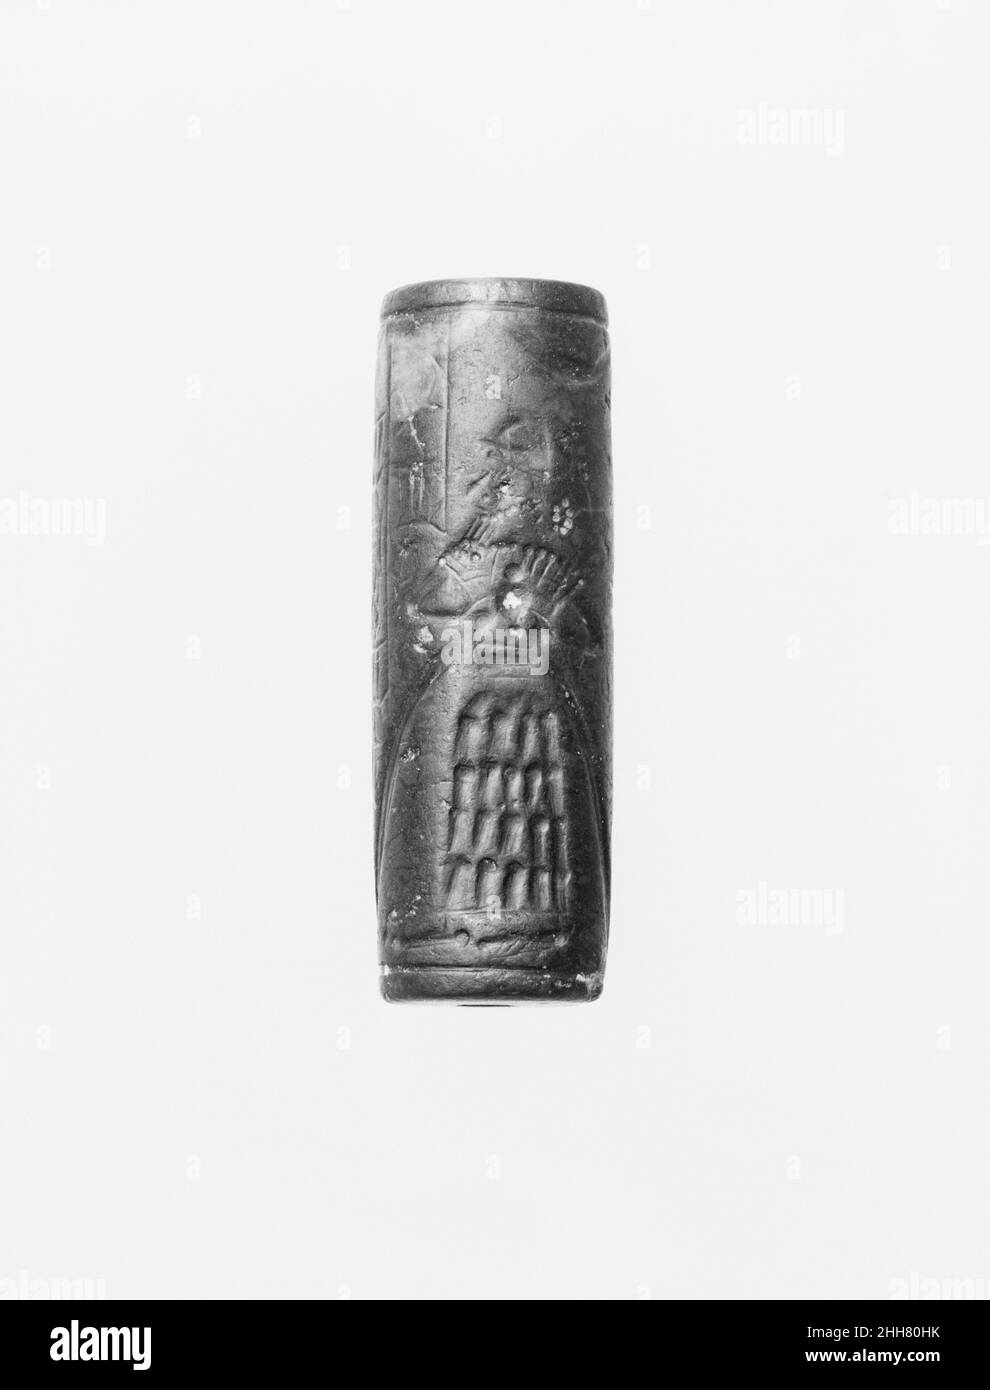 Joint cylindrique et impression moderne: dieu avec vase fluide; démon griffin ca.12th siècle avant J.-C. Assyrian bien que les pierres gravées aient été utilisées dès le septième millénaire avant J.-C. pour estampiller les impressions dans l'argile, l'invention dans le quatrième millénaire avant J.-C. de cylindres sculptés qui pourraient être roulés sur l'argile a permis le développement de conceptions de joints plus complexes.Ces joints de cylindre, utilisés pour la première fois en Mésopotamie, ont servi de marque de propriété ou d'identification.Les phoques ont été soit impressionnés sur des morceaux d'argile qui ont été utilisés pour fermer des bocaux, des portes, et des paniers, ou ils ont été roulés sur des comprimés d'argile que r Banque D'Images